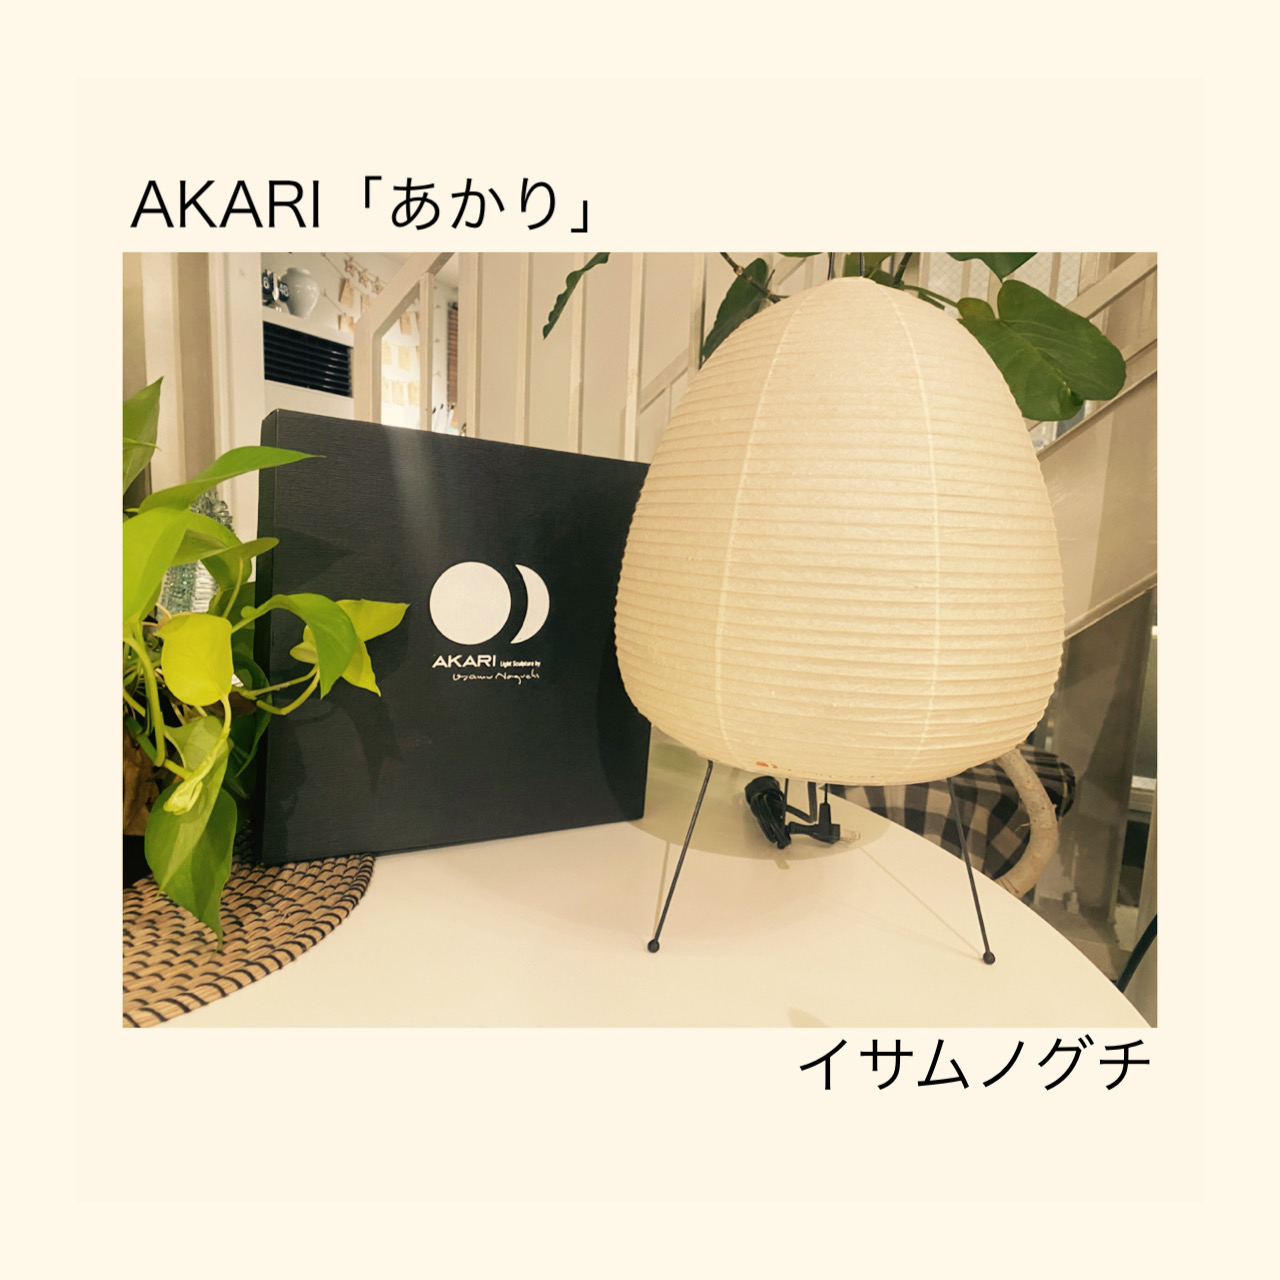 イサム・ノグチ AKARI アカリ 10A リプロダクト品 9 - フロアスタンド